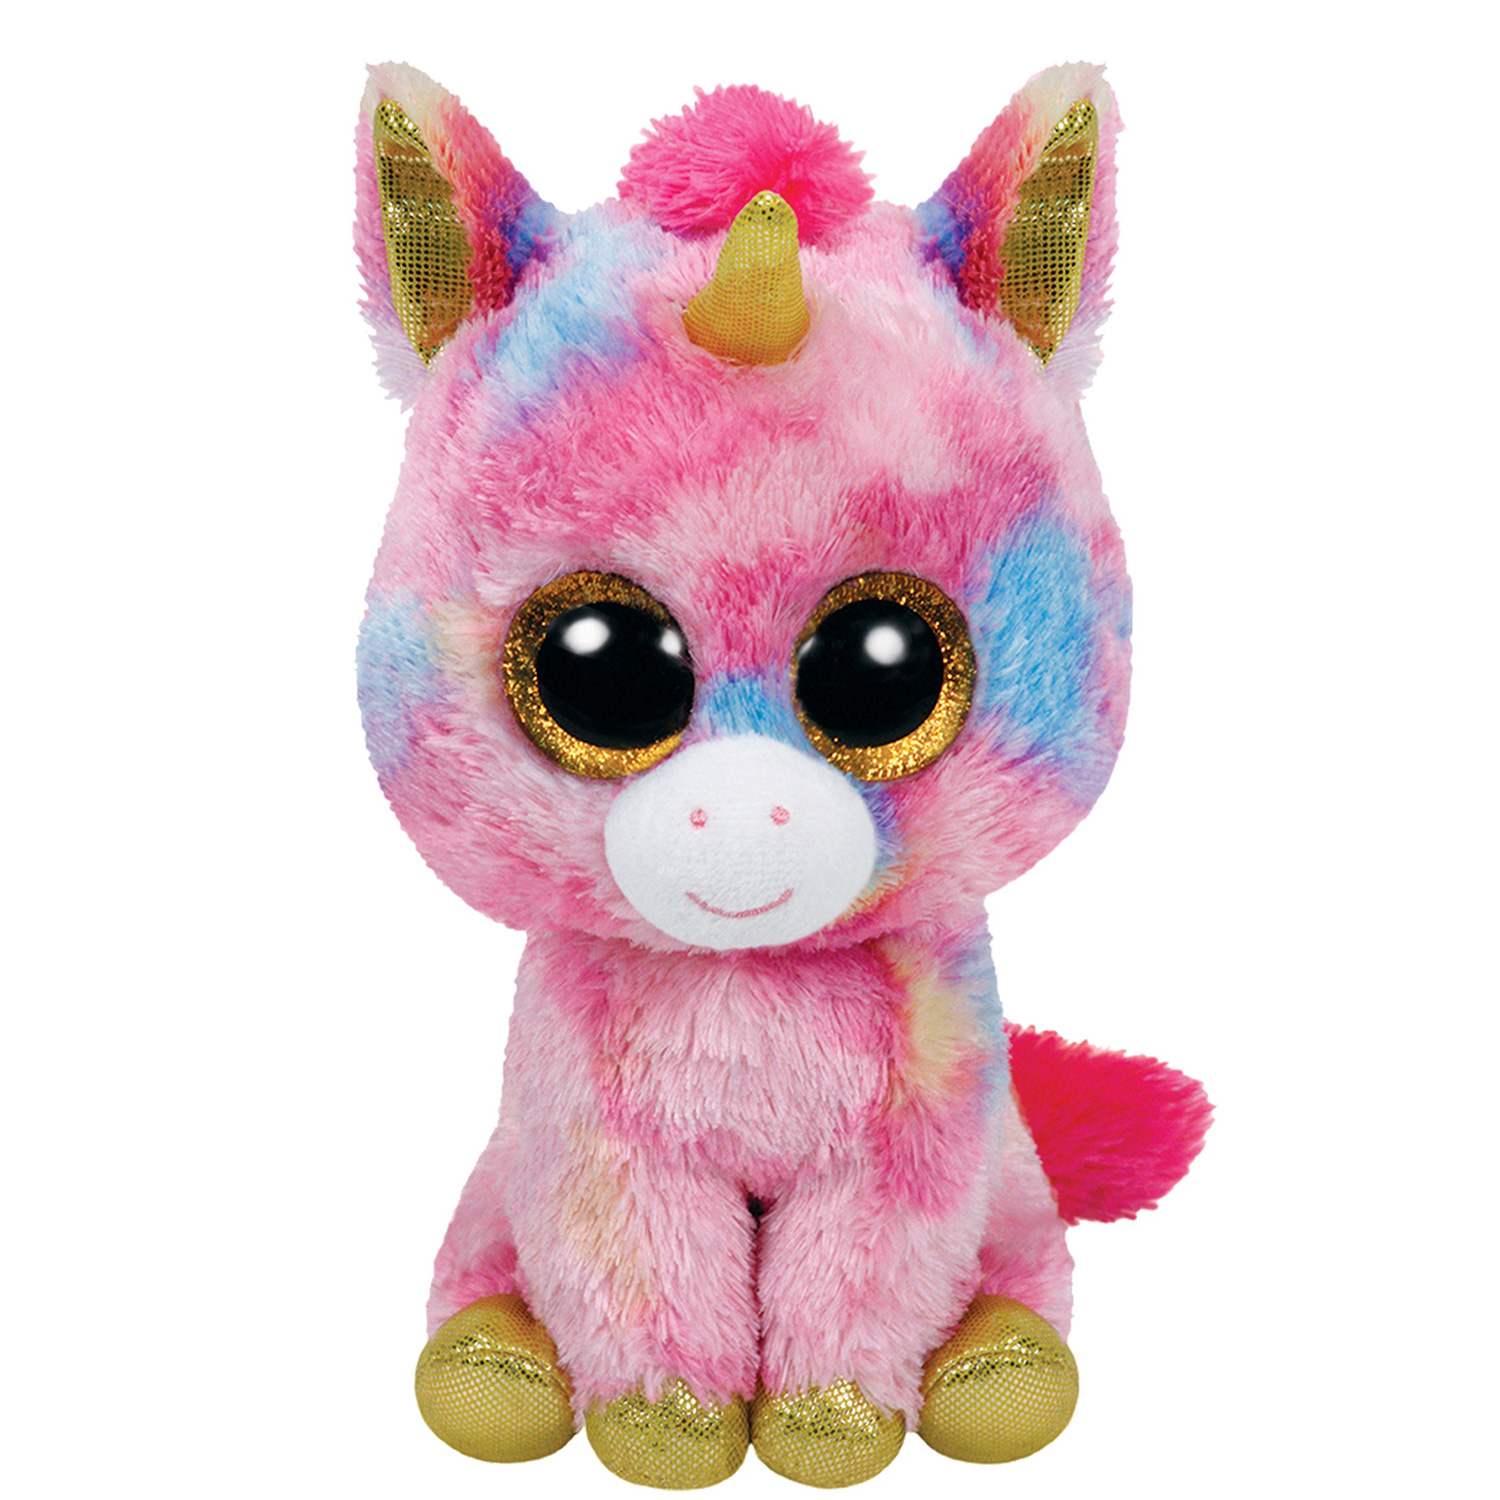 Boo Plush Unicorn-Fantasia Thimble Toys